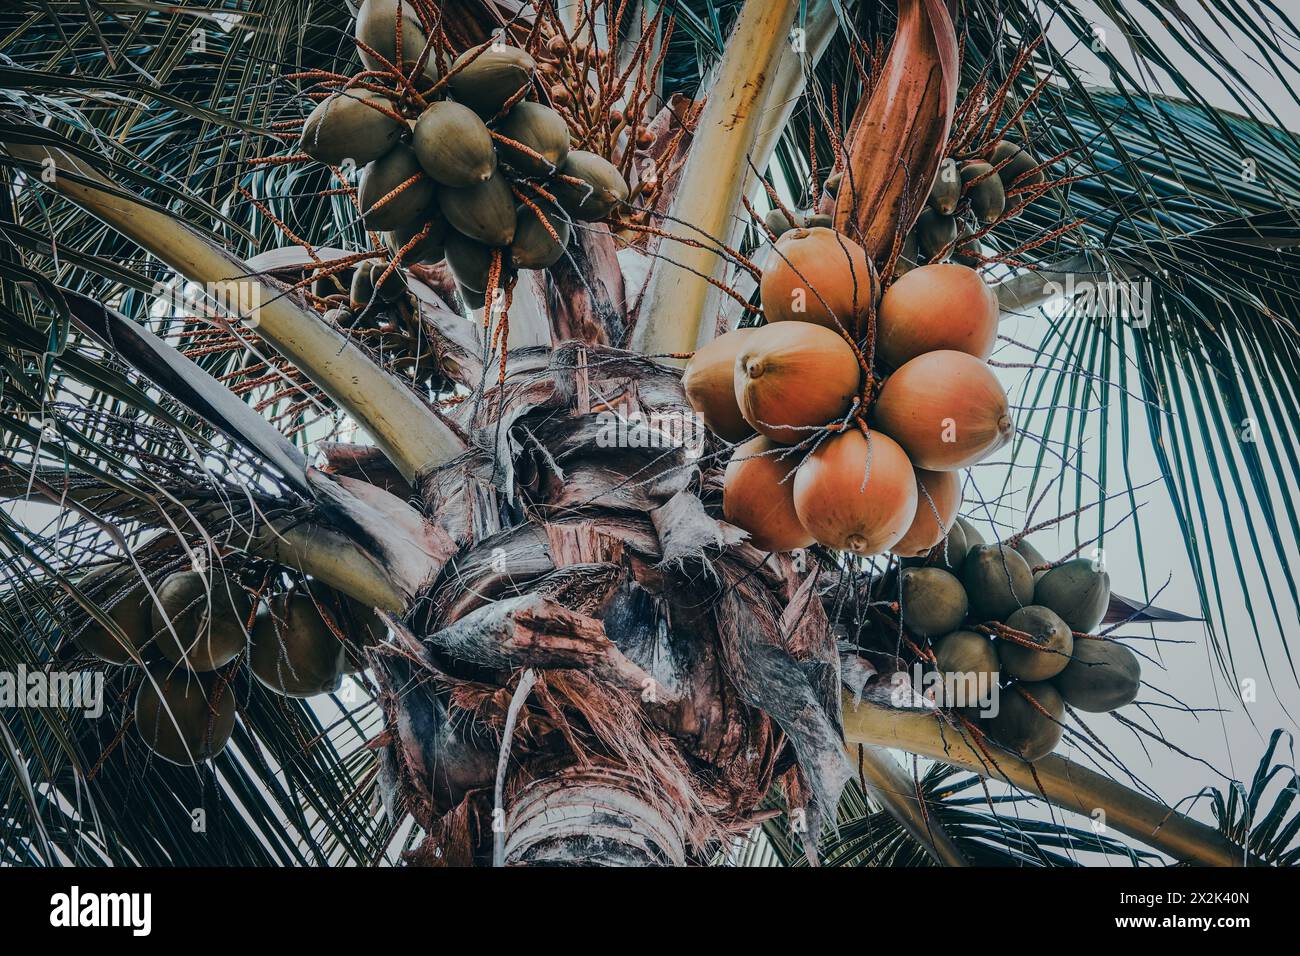 Immagine vivace che mostra un albero di cocco maturo traboccante di mucche di cocco maturo, splendidamente incorniciato da vibranti foglie di palma contro un cielo morbido. Foto Stock